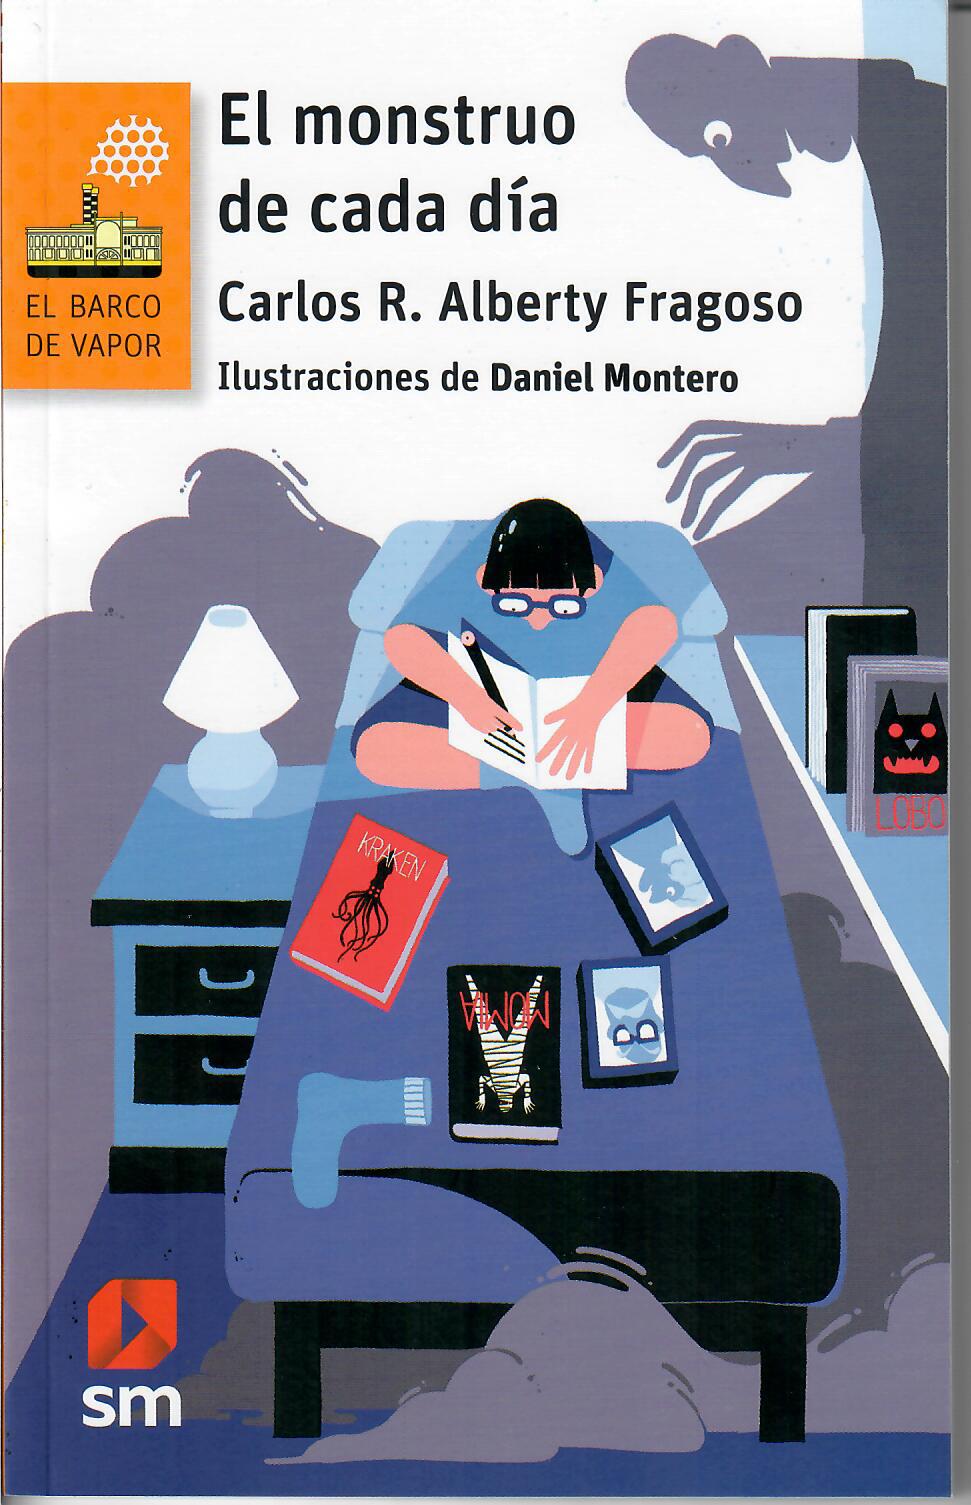 EL MONSTRUO DE CADA DIA - Carlos R. Alberty Fragoso